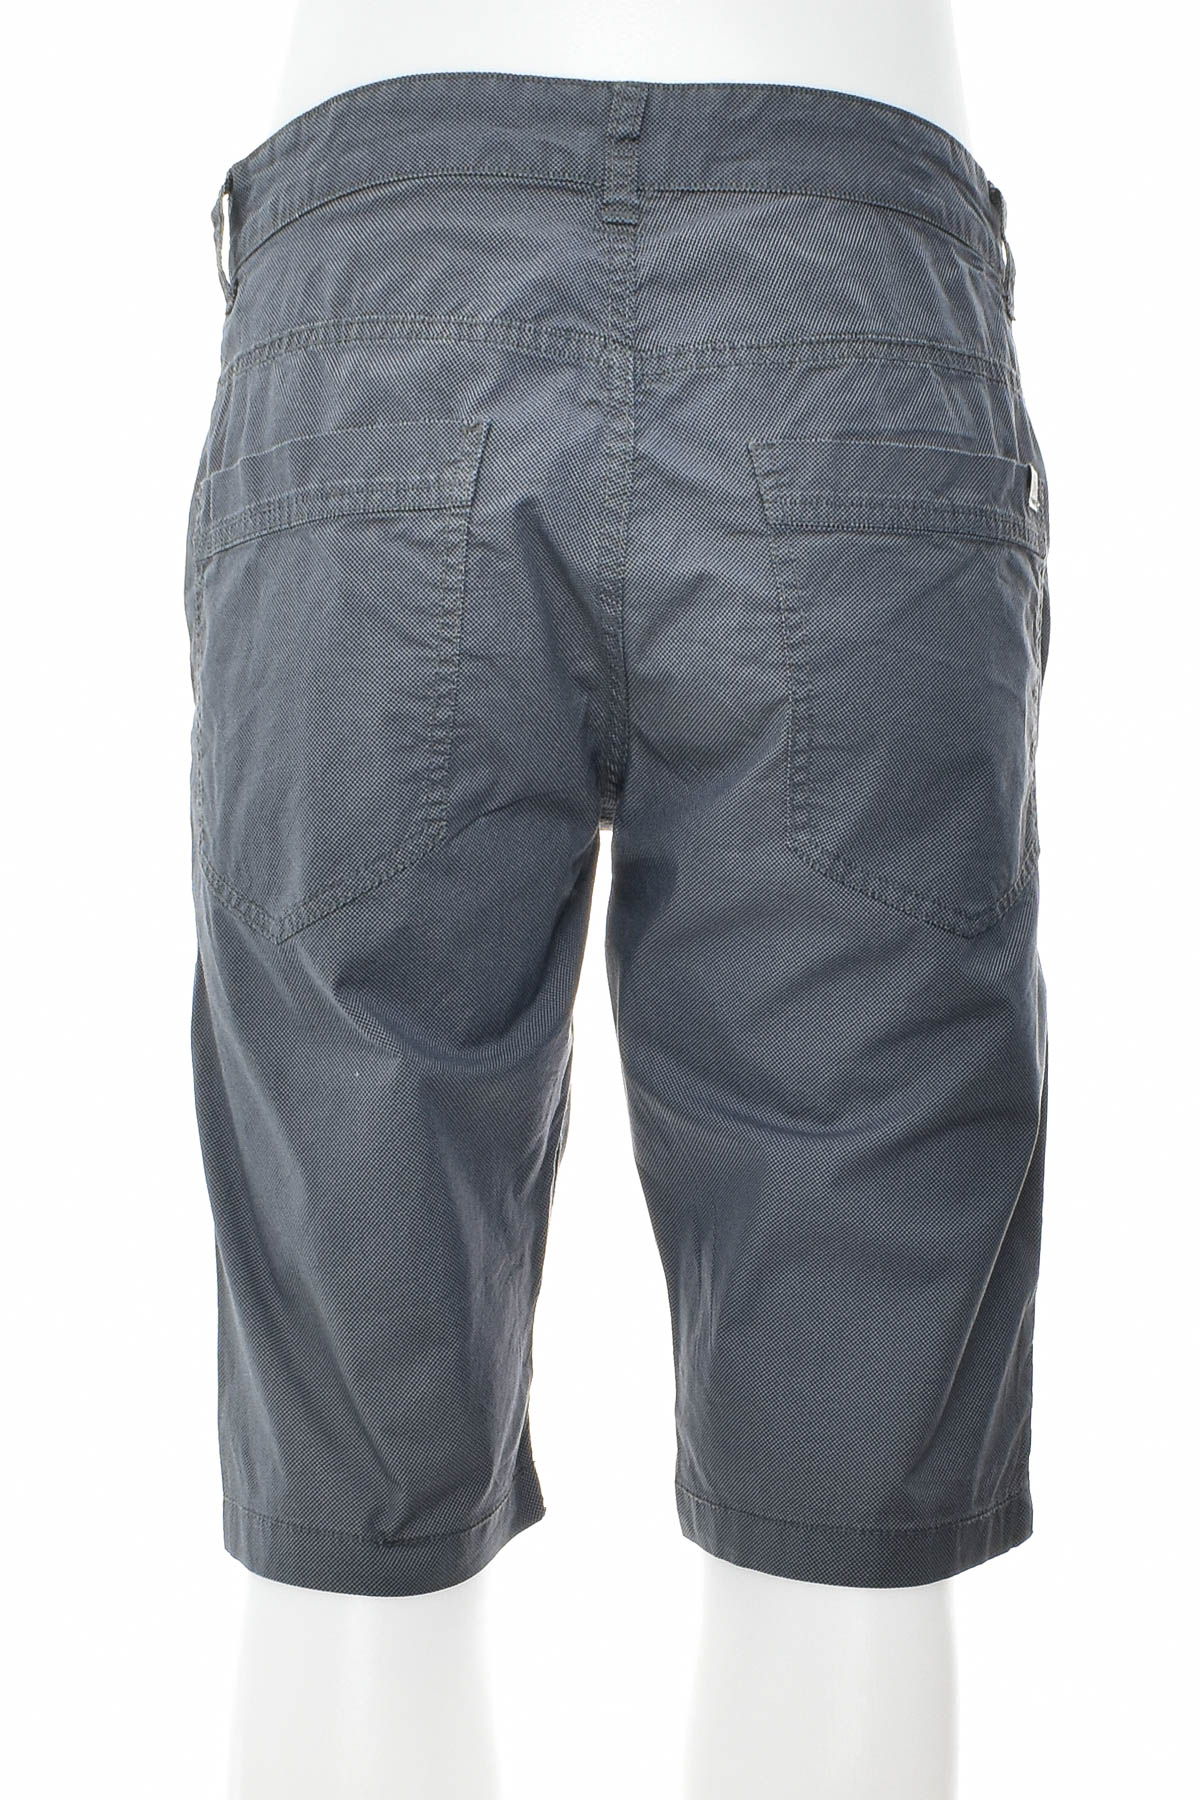 Men's shorts - TOM TAILOR - 1